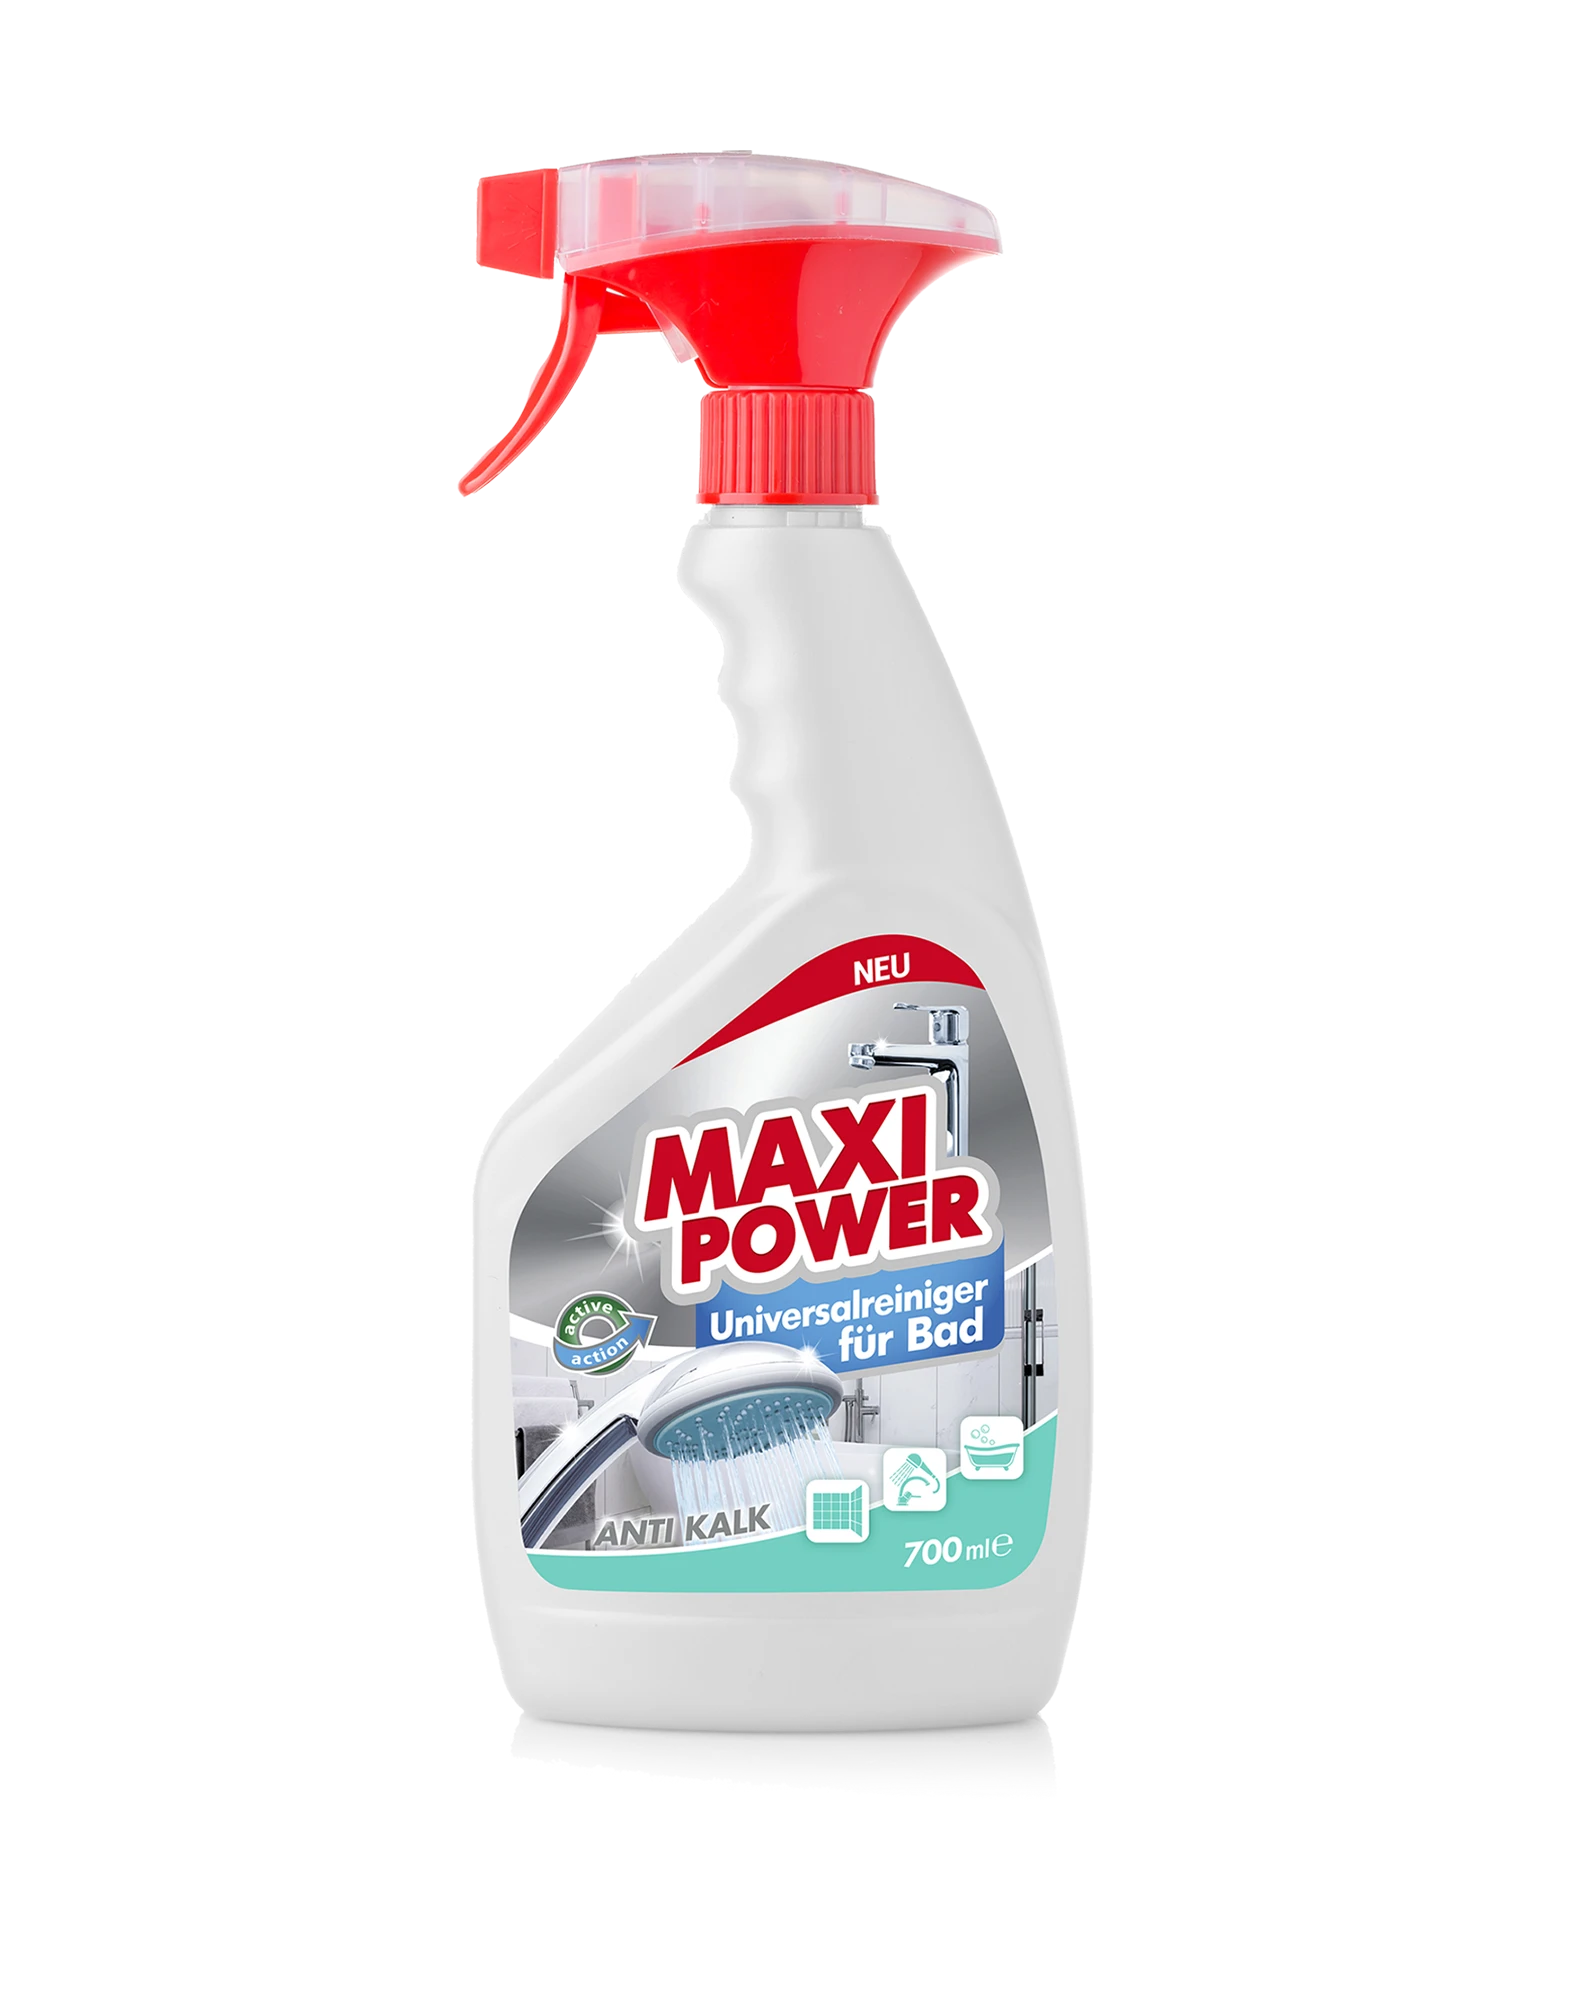 Maxi Power Универсальное моющее средство Для ванной комнаты